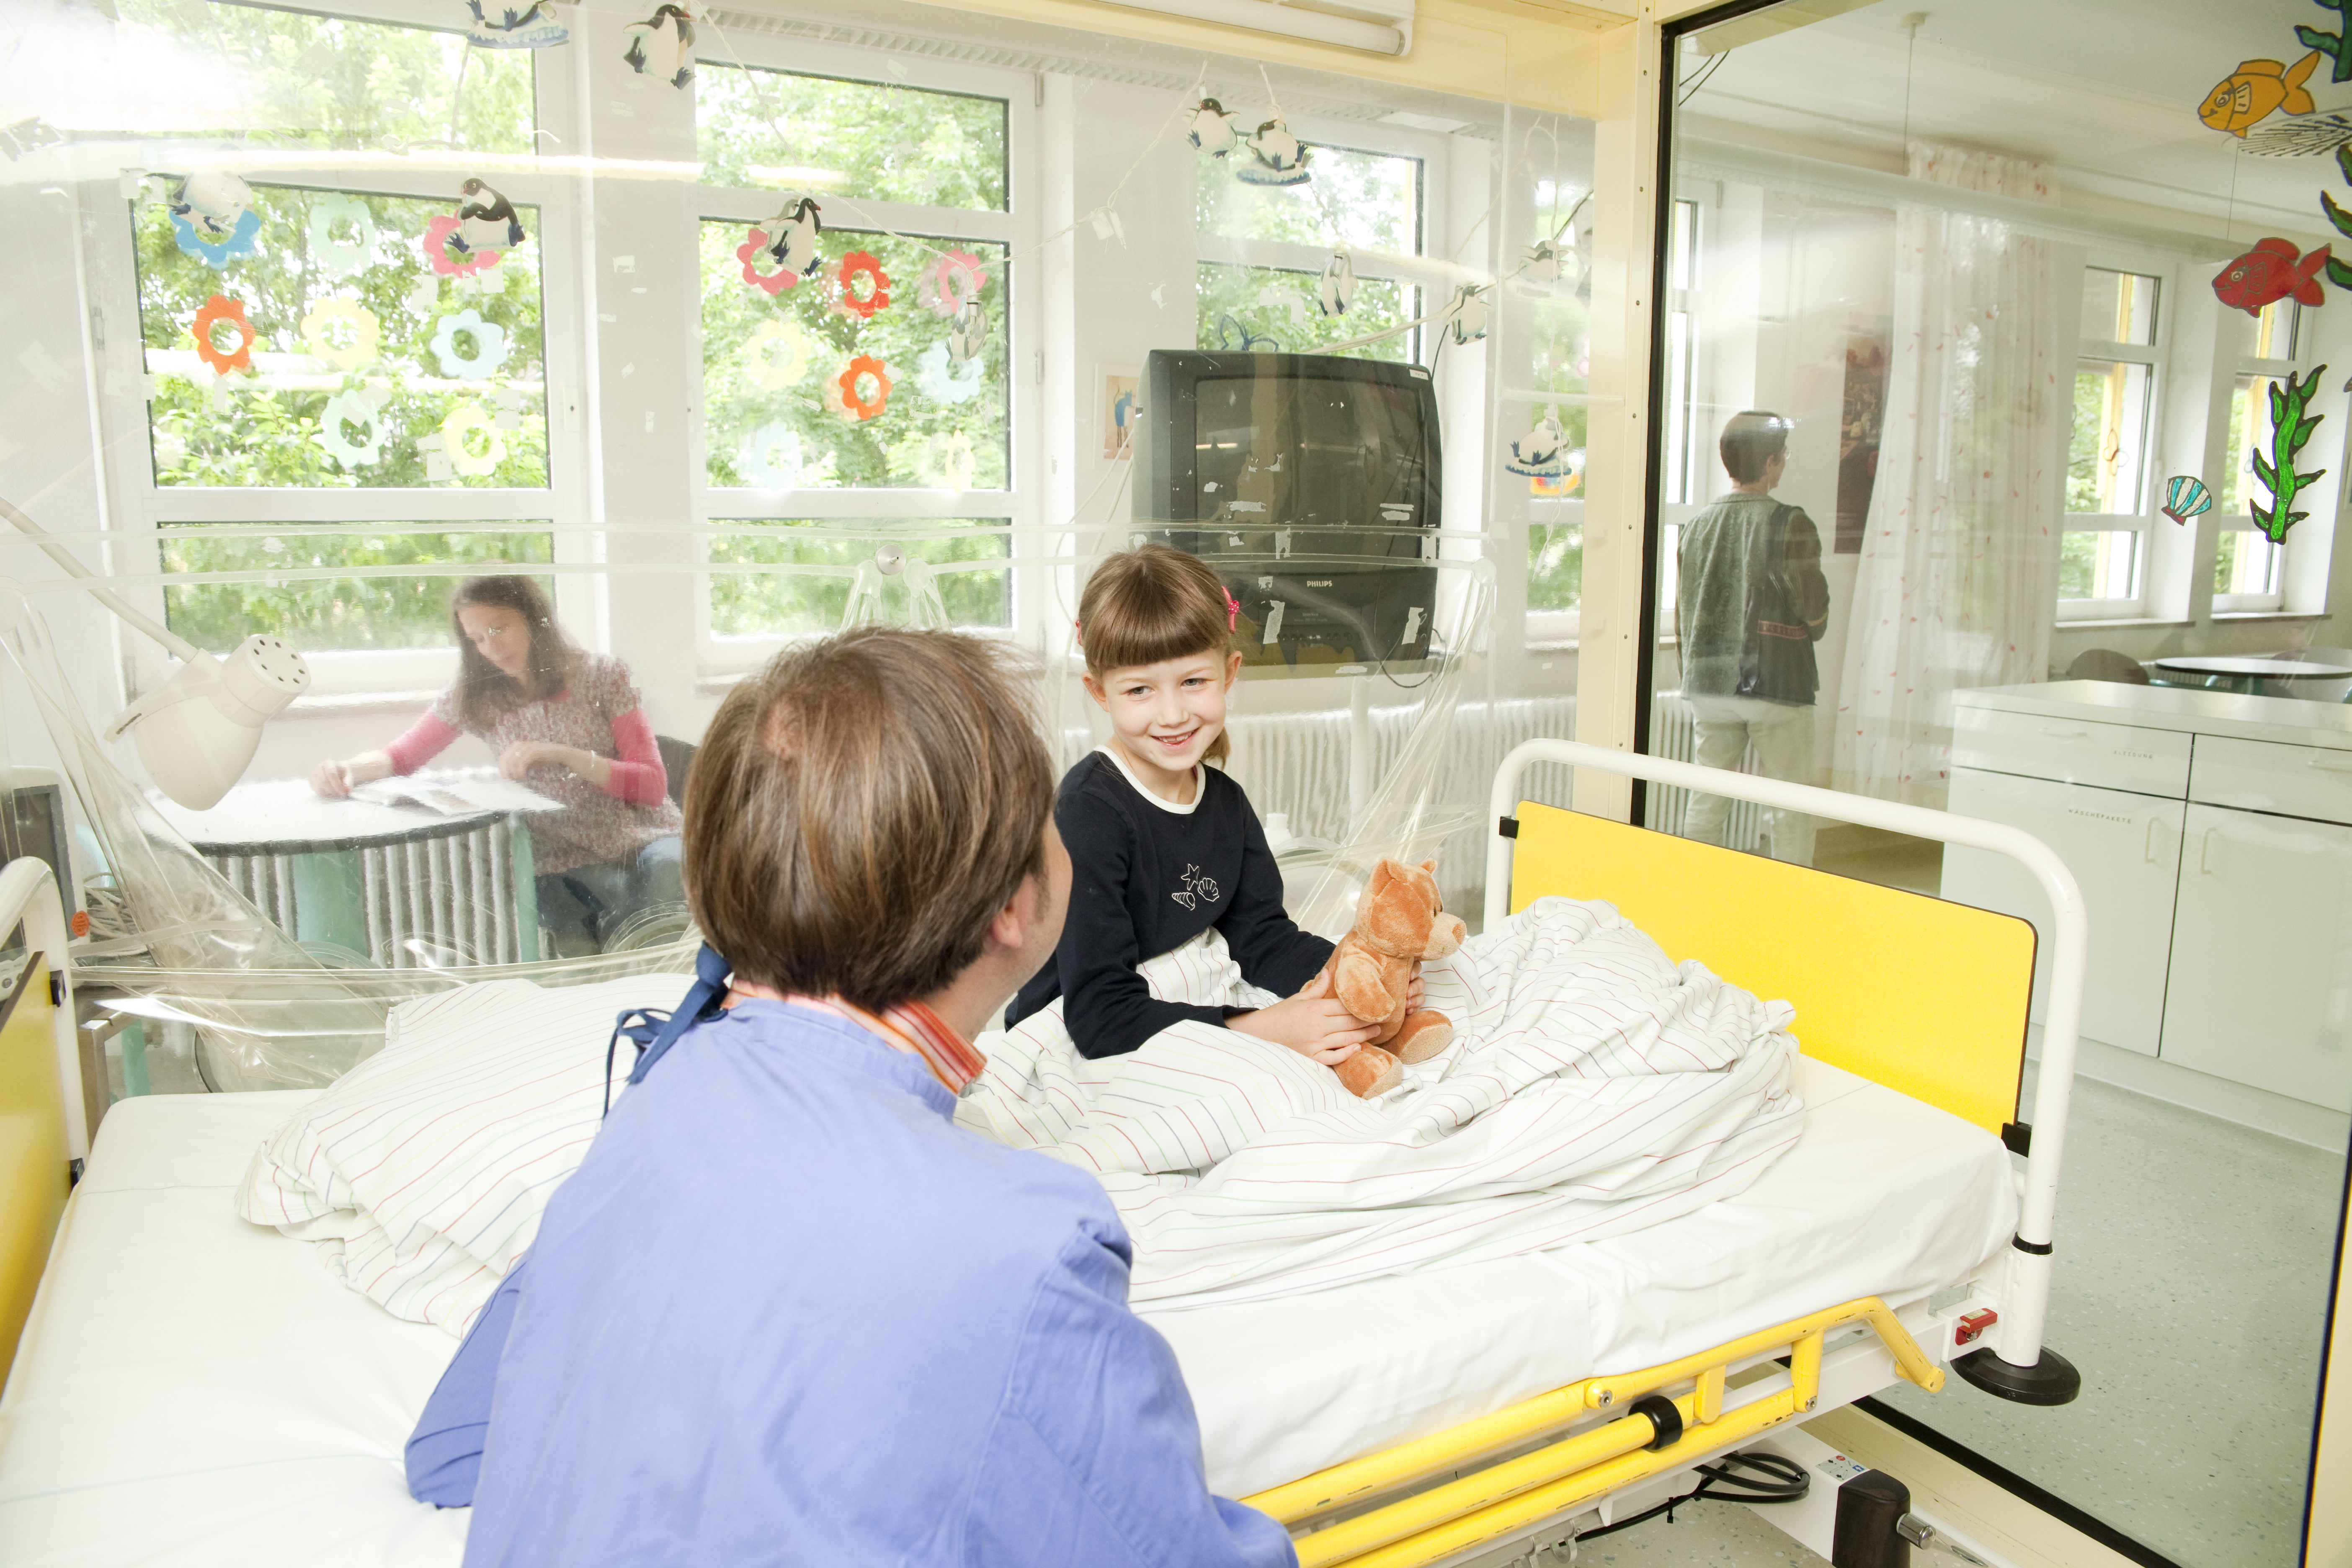 Erwachsener sitzt vor einem Bett auf dem eine junge Patientin sitzt und lacht